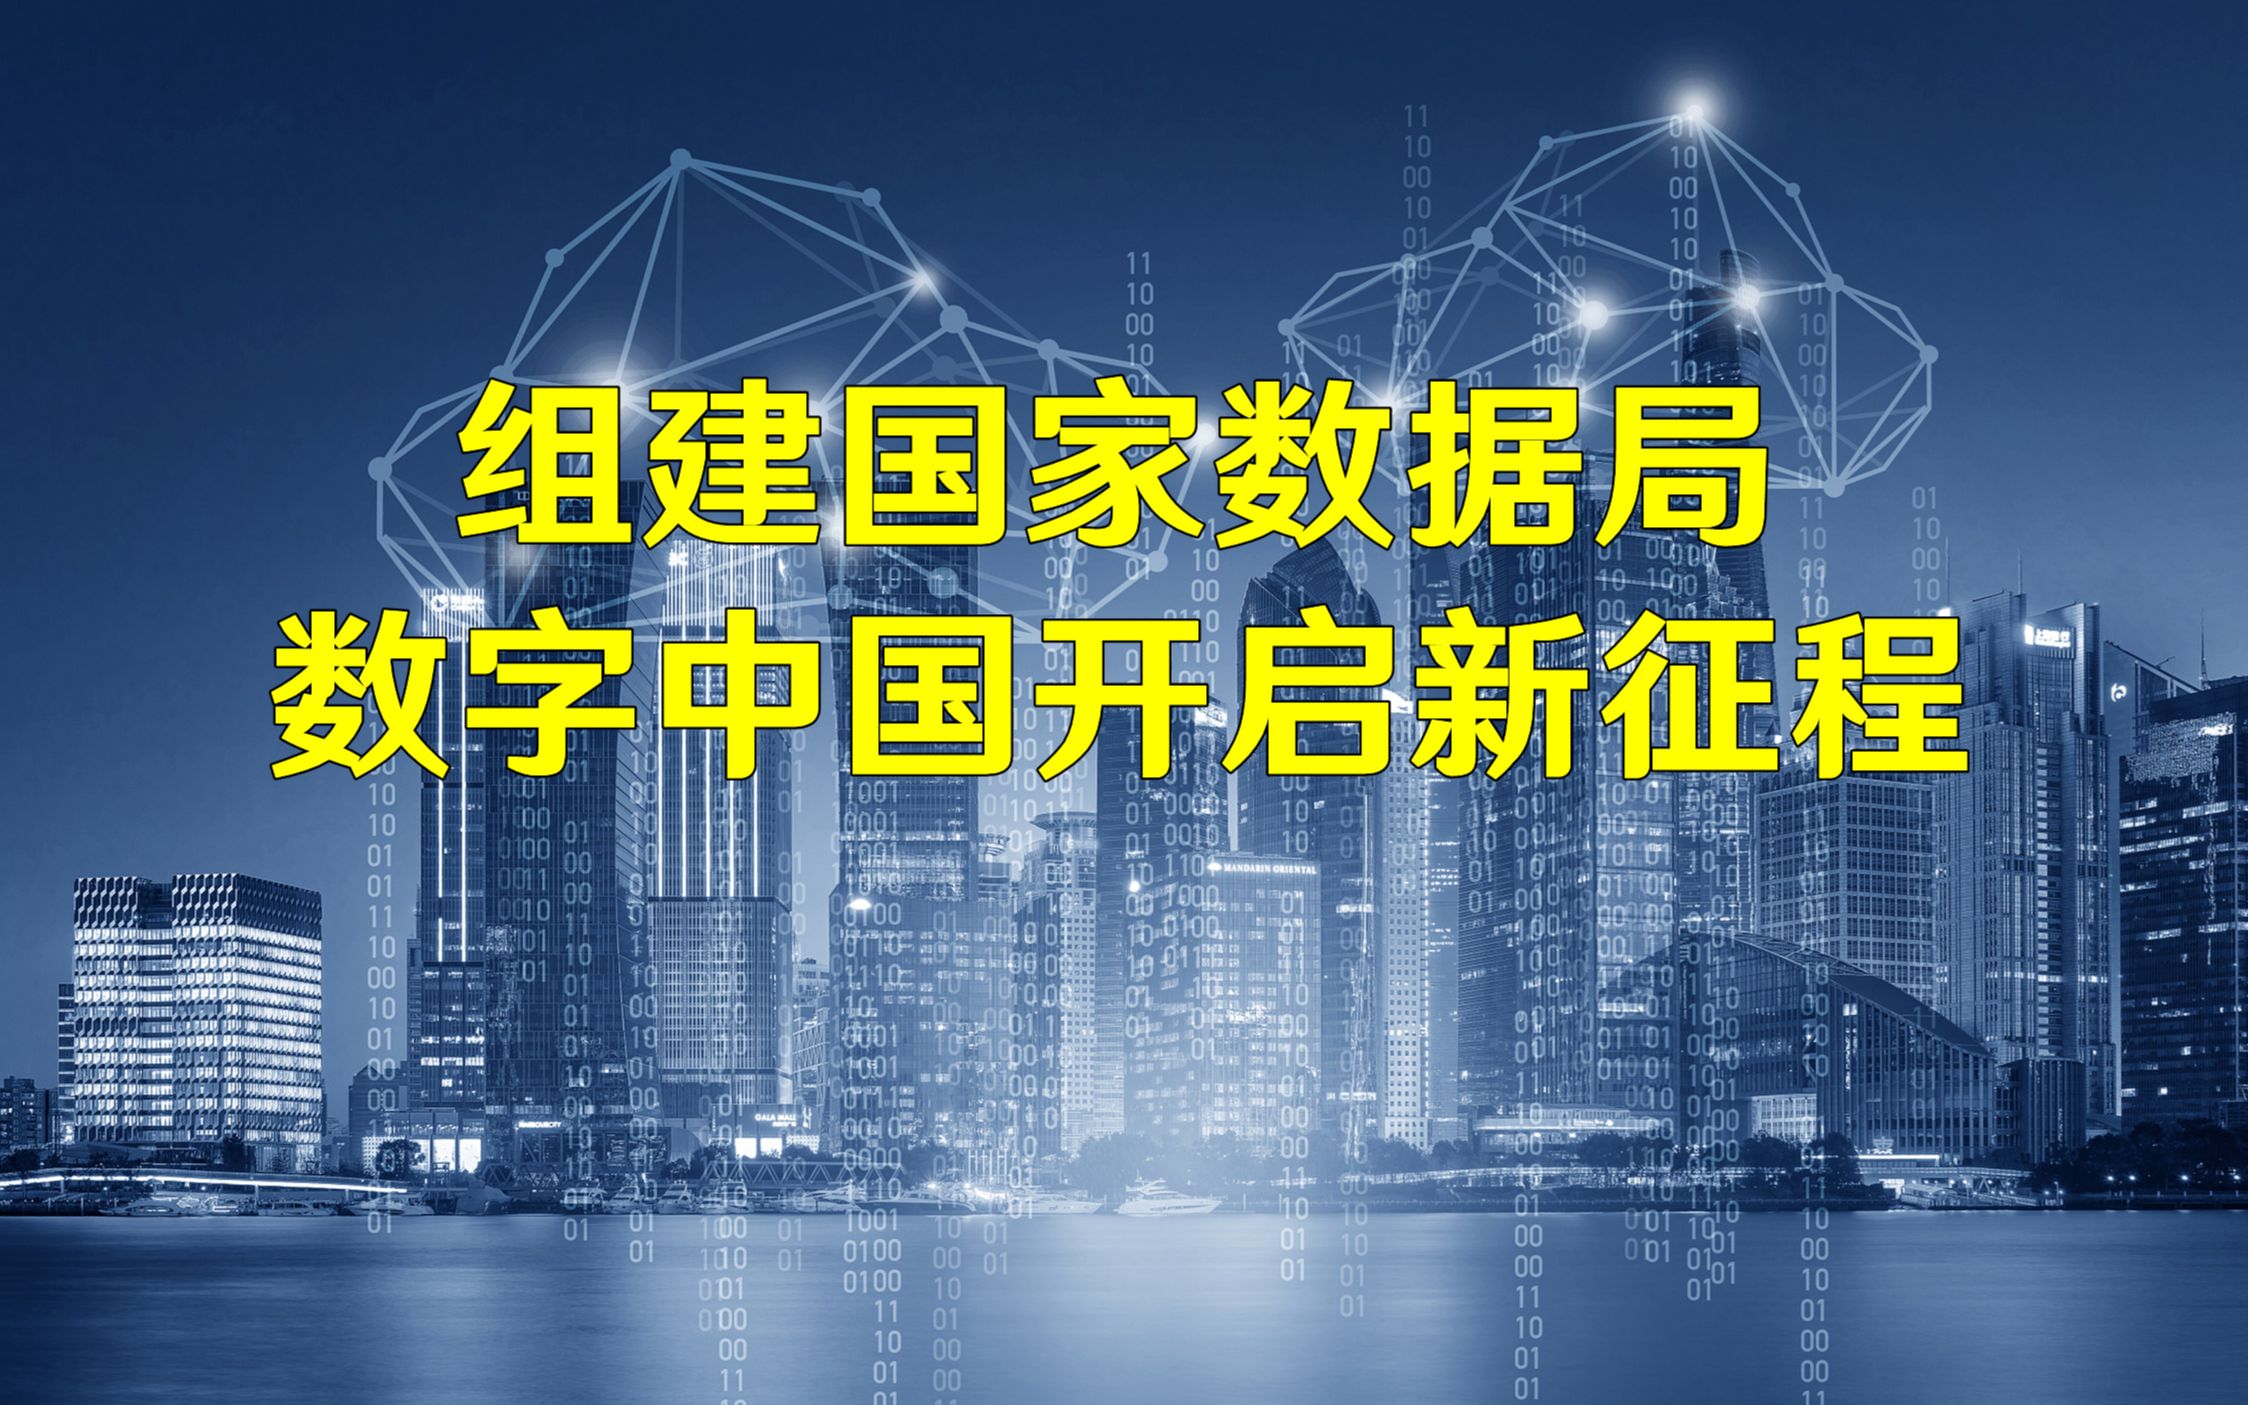 IDC：预计到2028年中国数字政府市场规模将达到2134亿元 复合增长率为9.4%